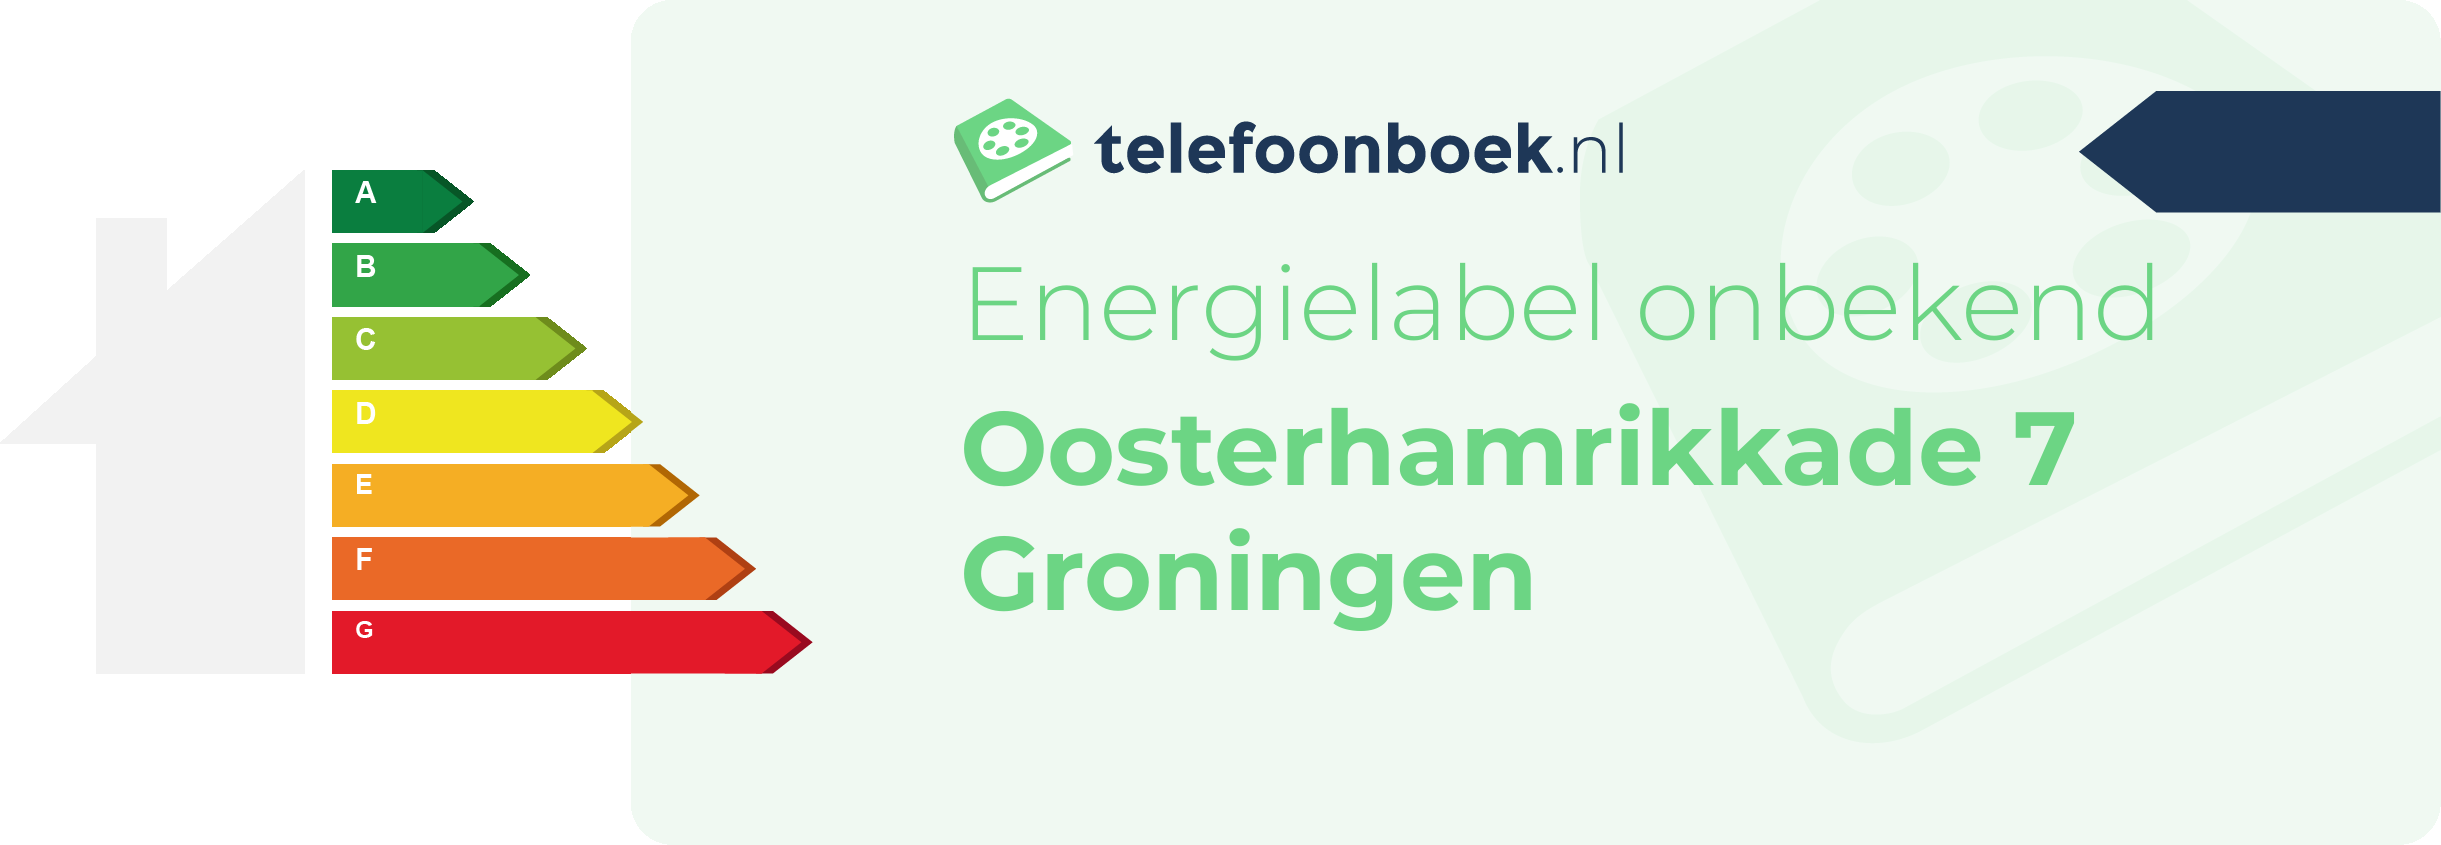 Energielabel Oosterhamrikkade 7 Groningen